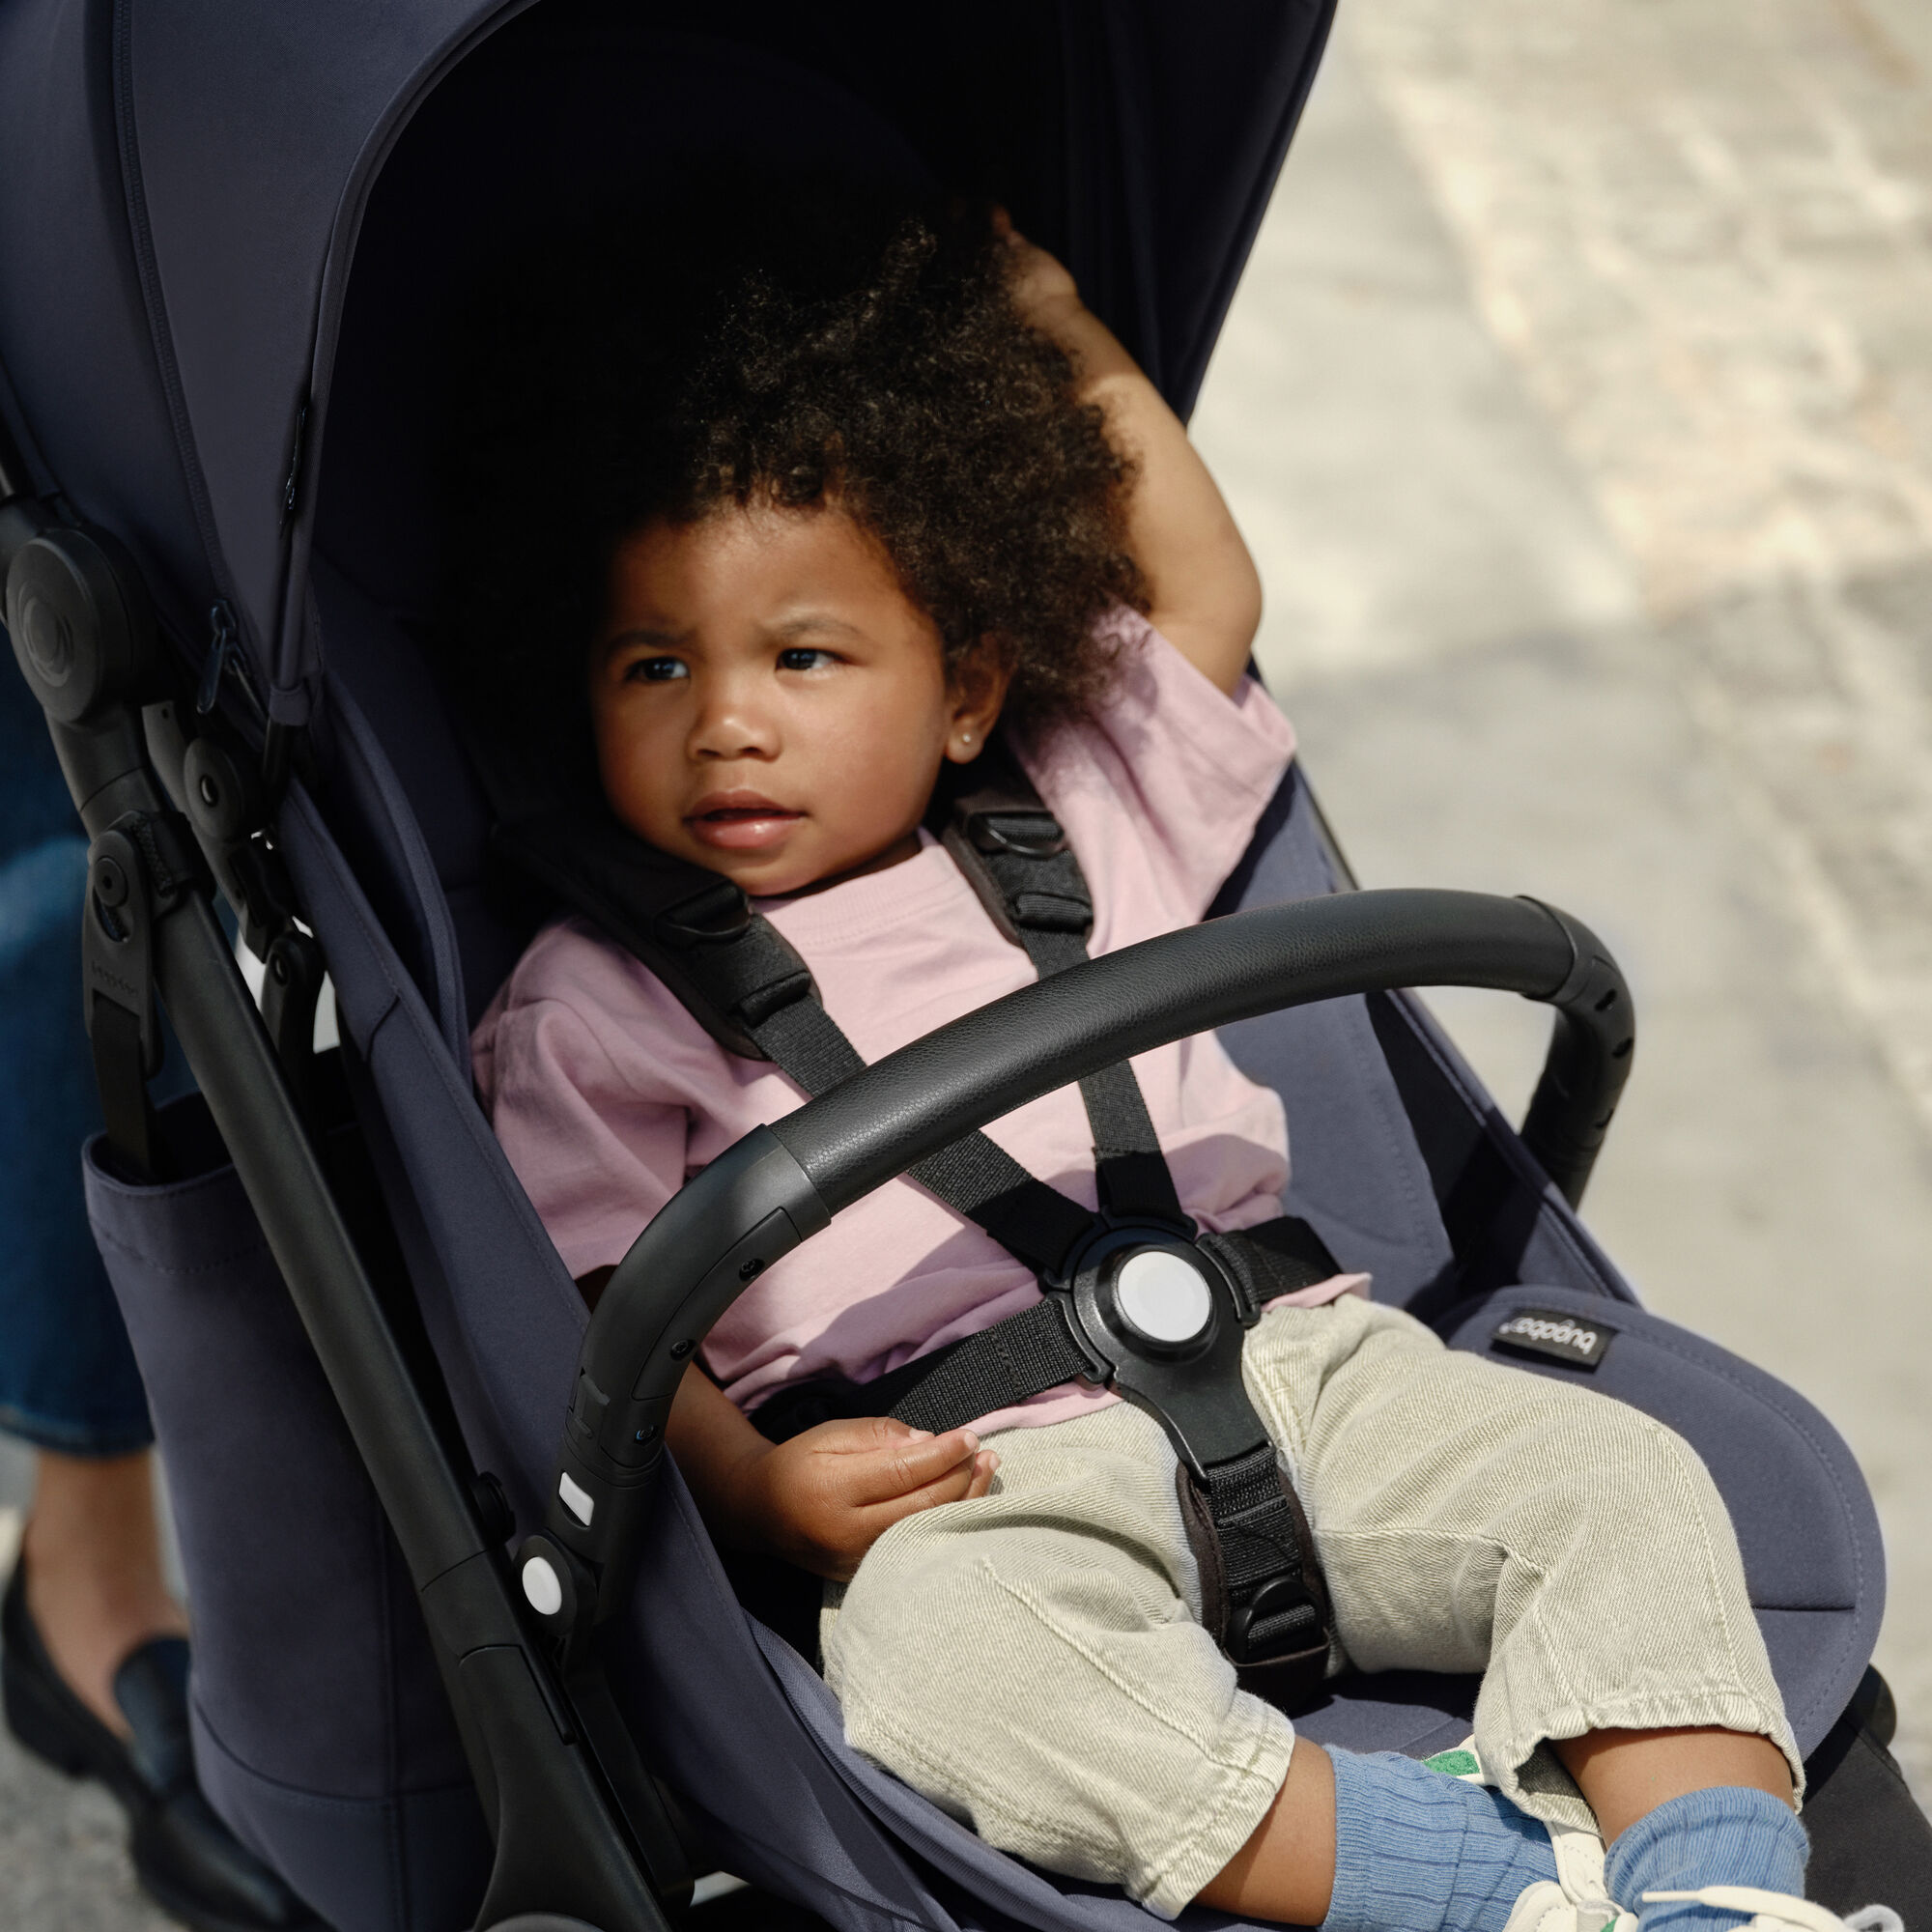 울트라 컴팩트 부가부 버터플라이 여행용 스트롤러의 시트에 편안히 앉아 있는 유아. 유아는 안전벨트를 착용하고 안전하게 앉아 있으며 부가부 버터플라이 범퍼바가 중앙에 설치되어 있습니다. 